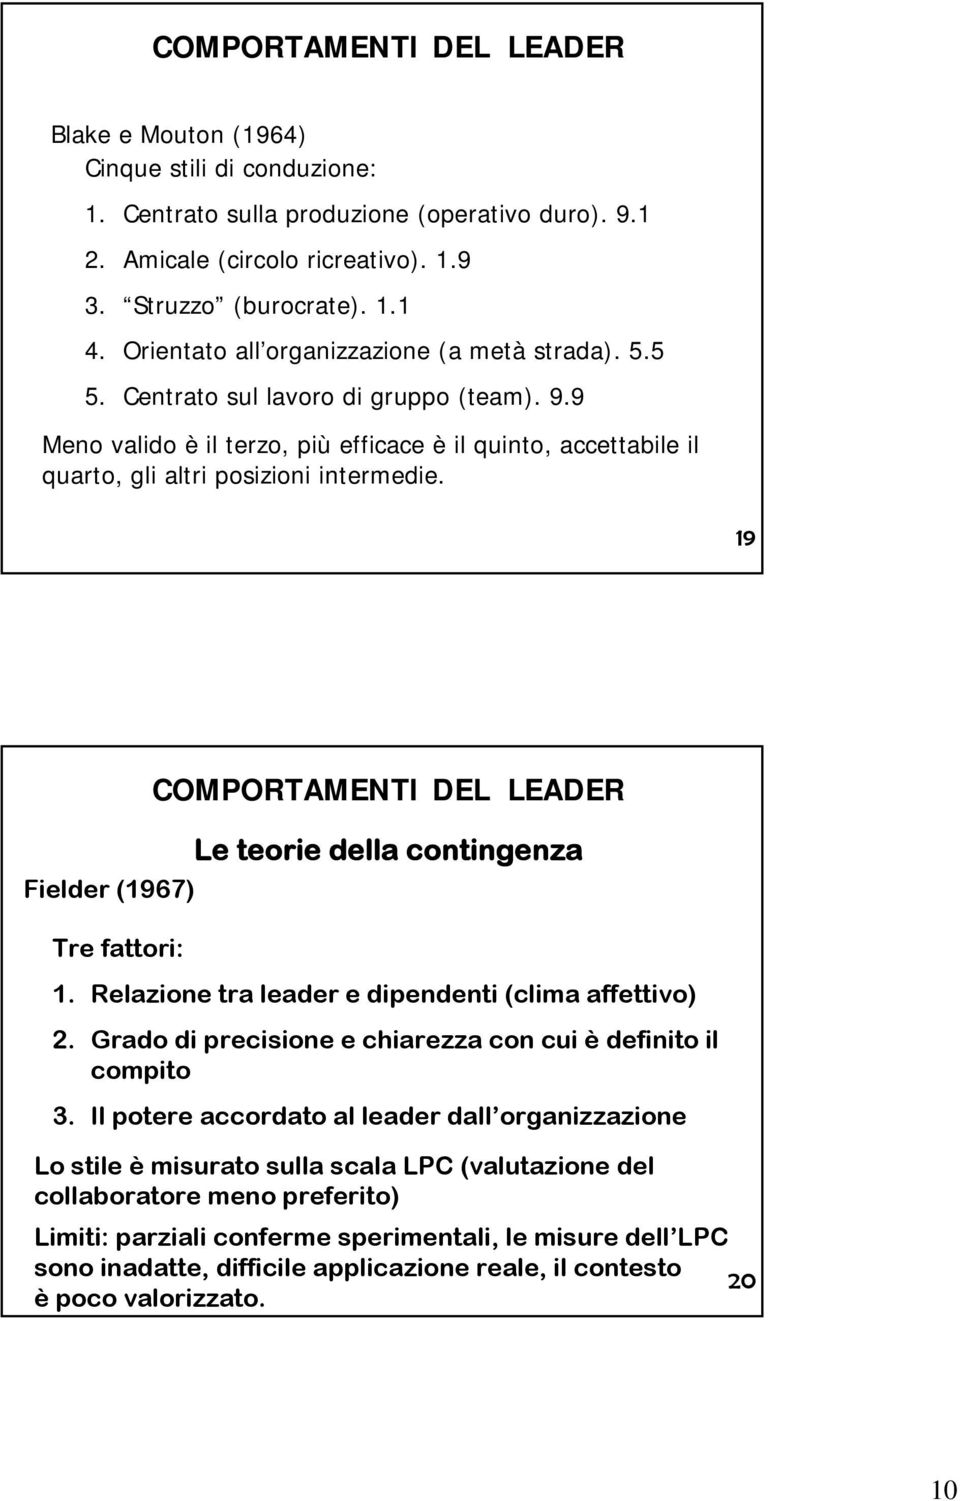 19 Fielder (1967) Tre fattori: COMPORTAMENTI DEL LEADER Le teorie della contingenza 1. Relazione tra leader e dipendenti (clima affettivo) 2.